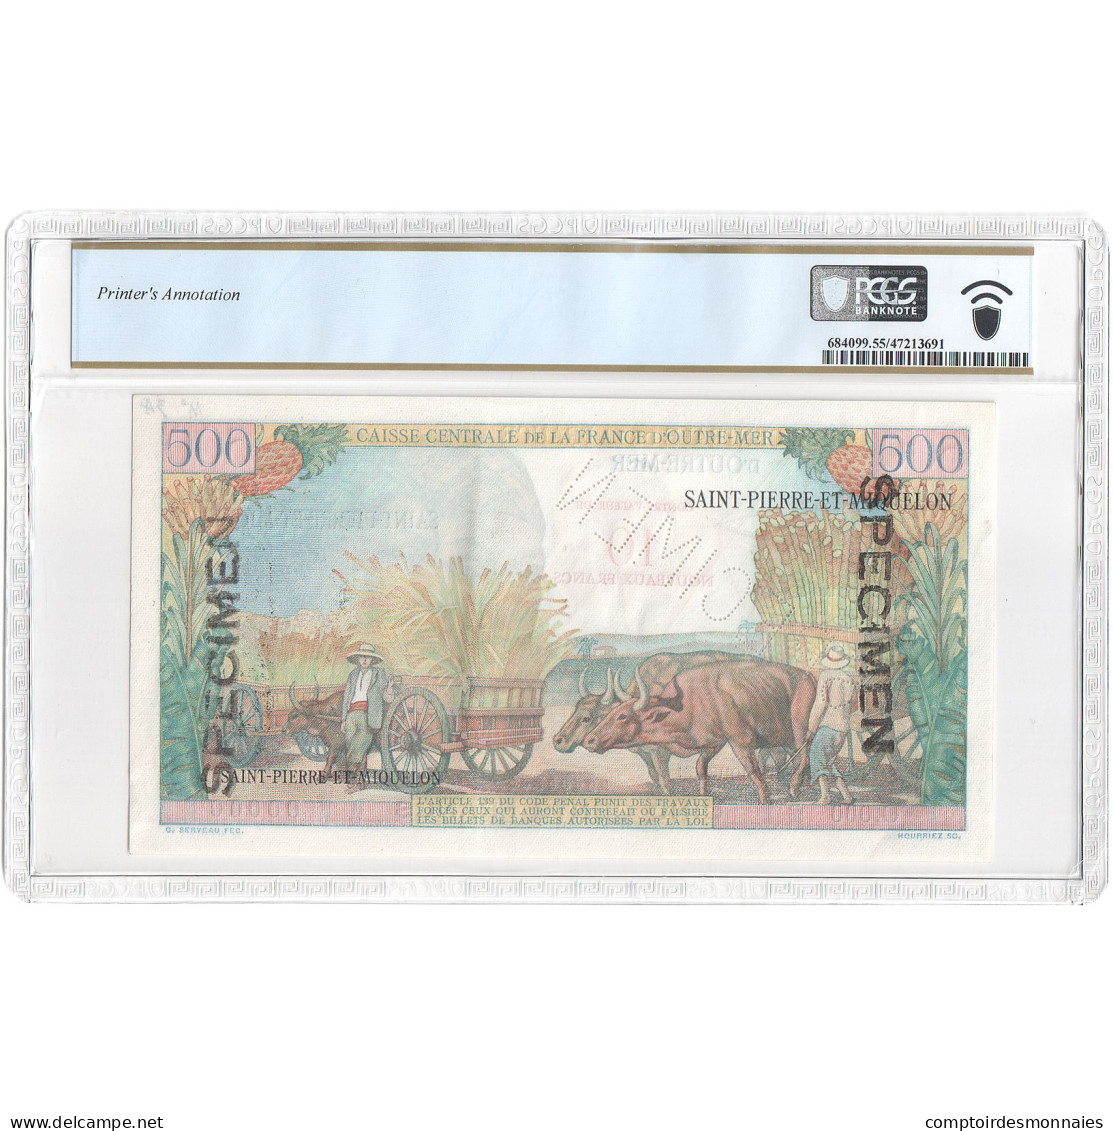 Saint-Pierre-et-Miquelon, 10 Nouveaux Francs On 500 Francs, Pointe-à-Pitre - Fiktive & Specimen